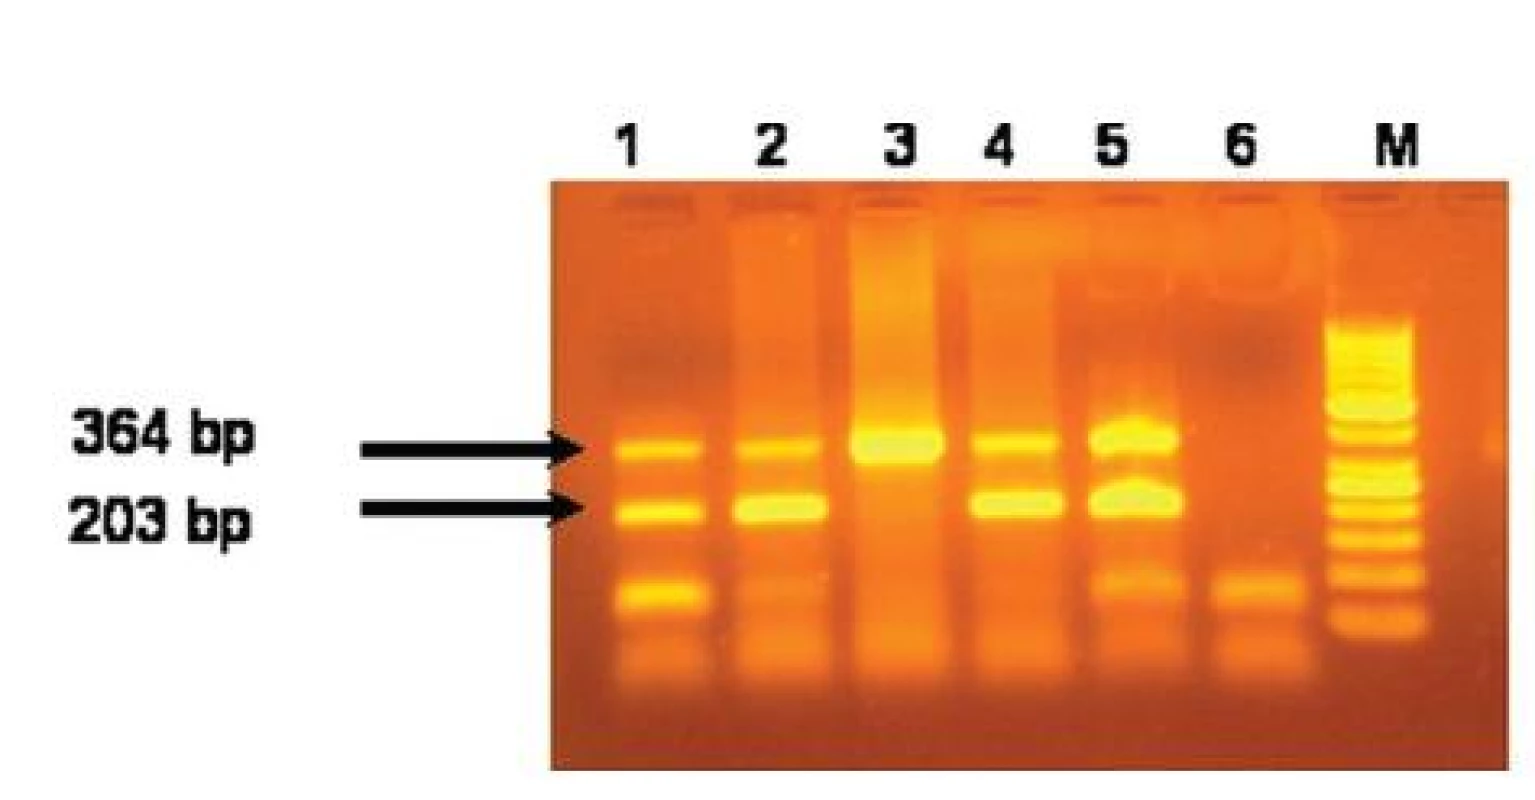 Výsledky alelovo-špecifickej hot start multiplex PCR na detekciu JAK2 V617F mutácie. Dráhy 1,2,4 a 5 predstavujú pacientov s JAK2V617F mutáciou. Dráha 3 je pacient bez JAK2V617F mutácie. Dráha 6 je negatívna kontrola a dráha M je 50 bp ladder.
